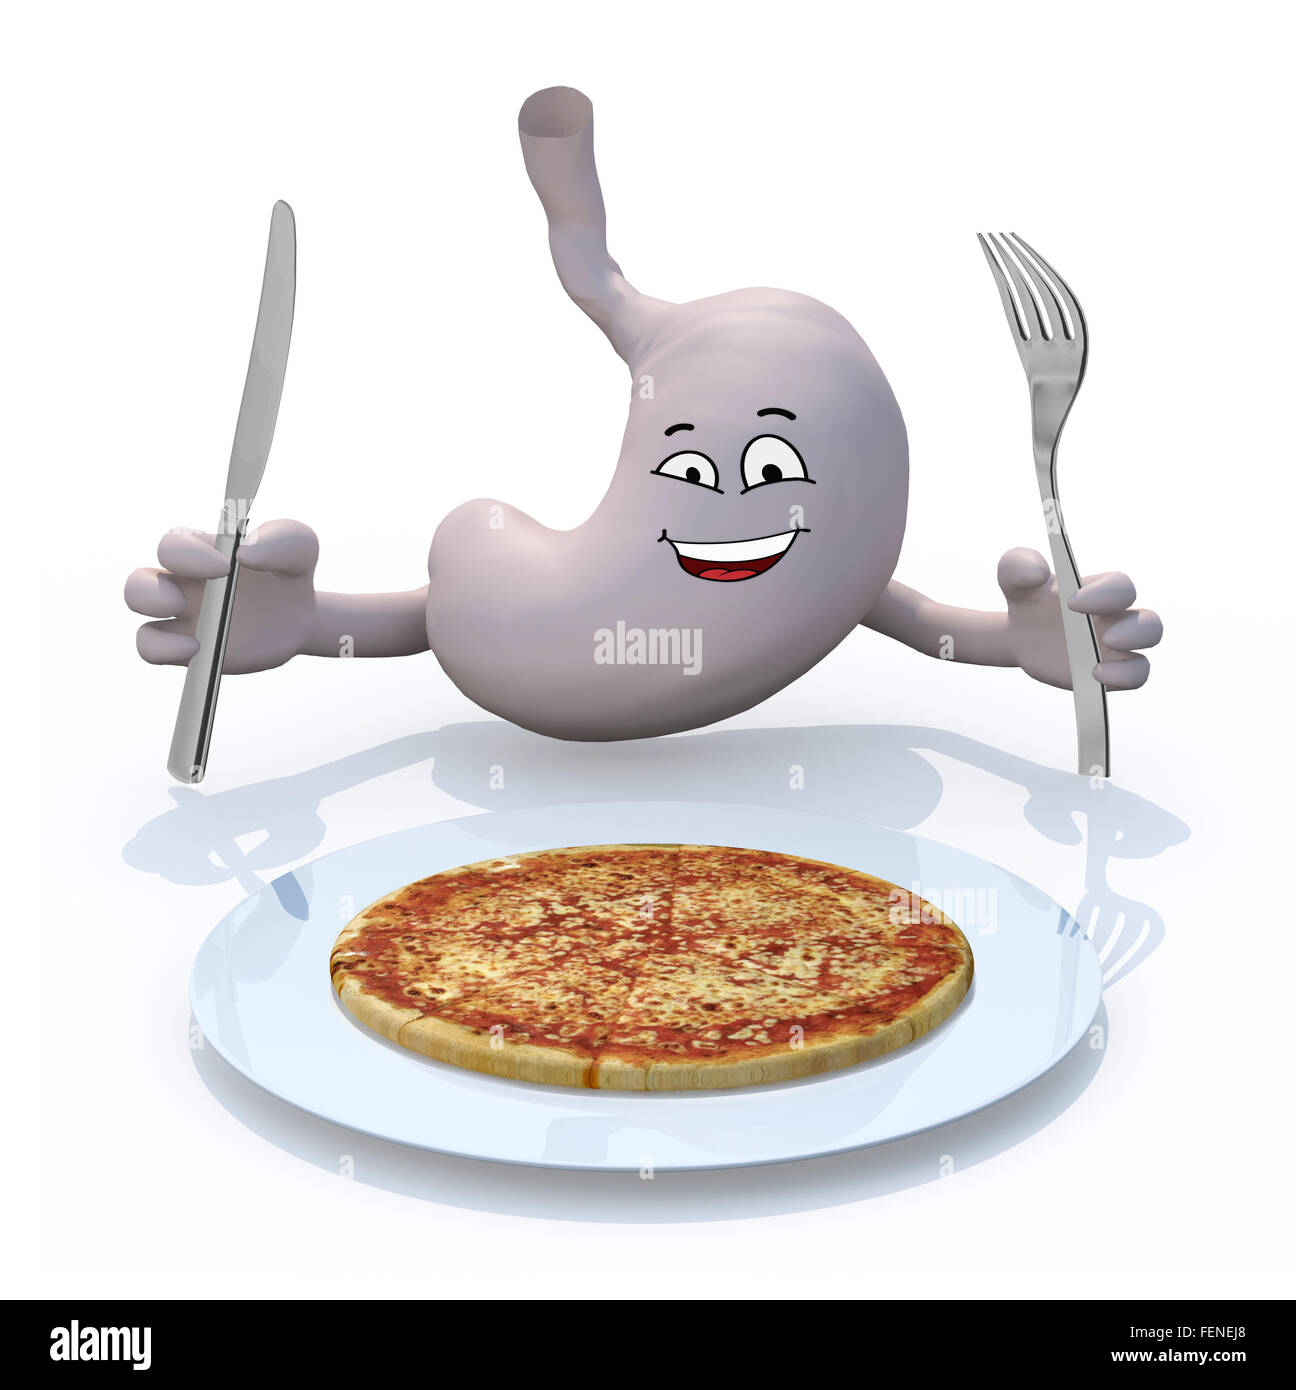 menschlichen Stomac mit Armen und Besteck auf der Seite vorne auf Spaghetti- Teller, 3d illustration Stockfotografie - Alamy